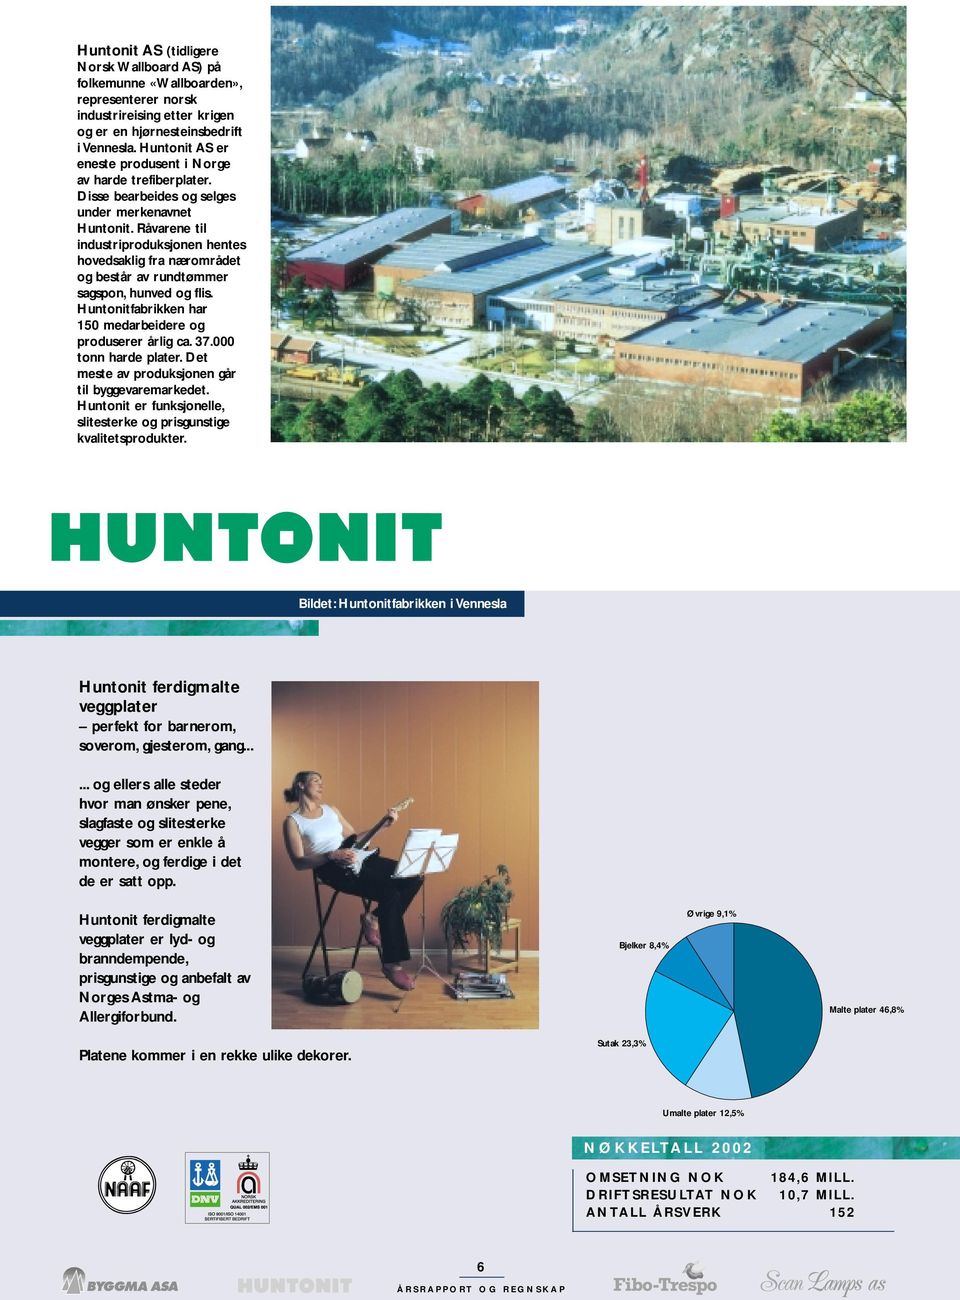 Råvarene til industriproduksjonen hentes hovedsaklig fra nærområdet og består av rundtømmer sagspon, hunved og flis. Huntonitfabrikken har 150 medarbeidere og produserer årlig ca. 37.